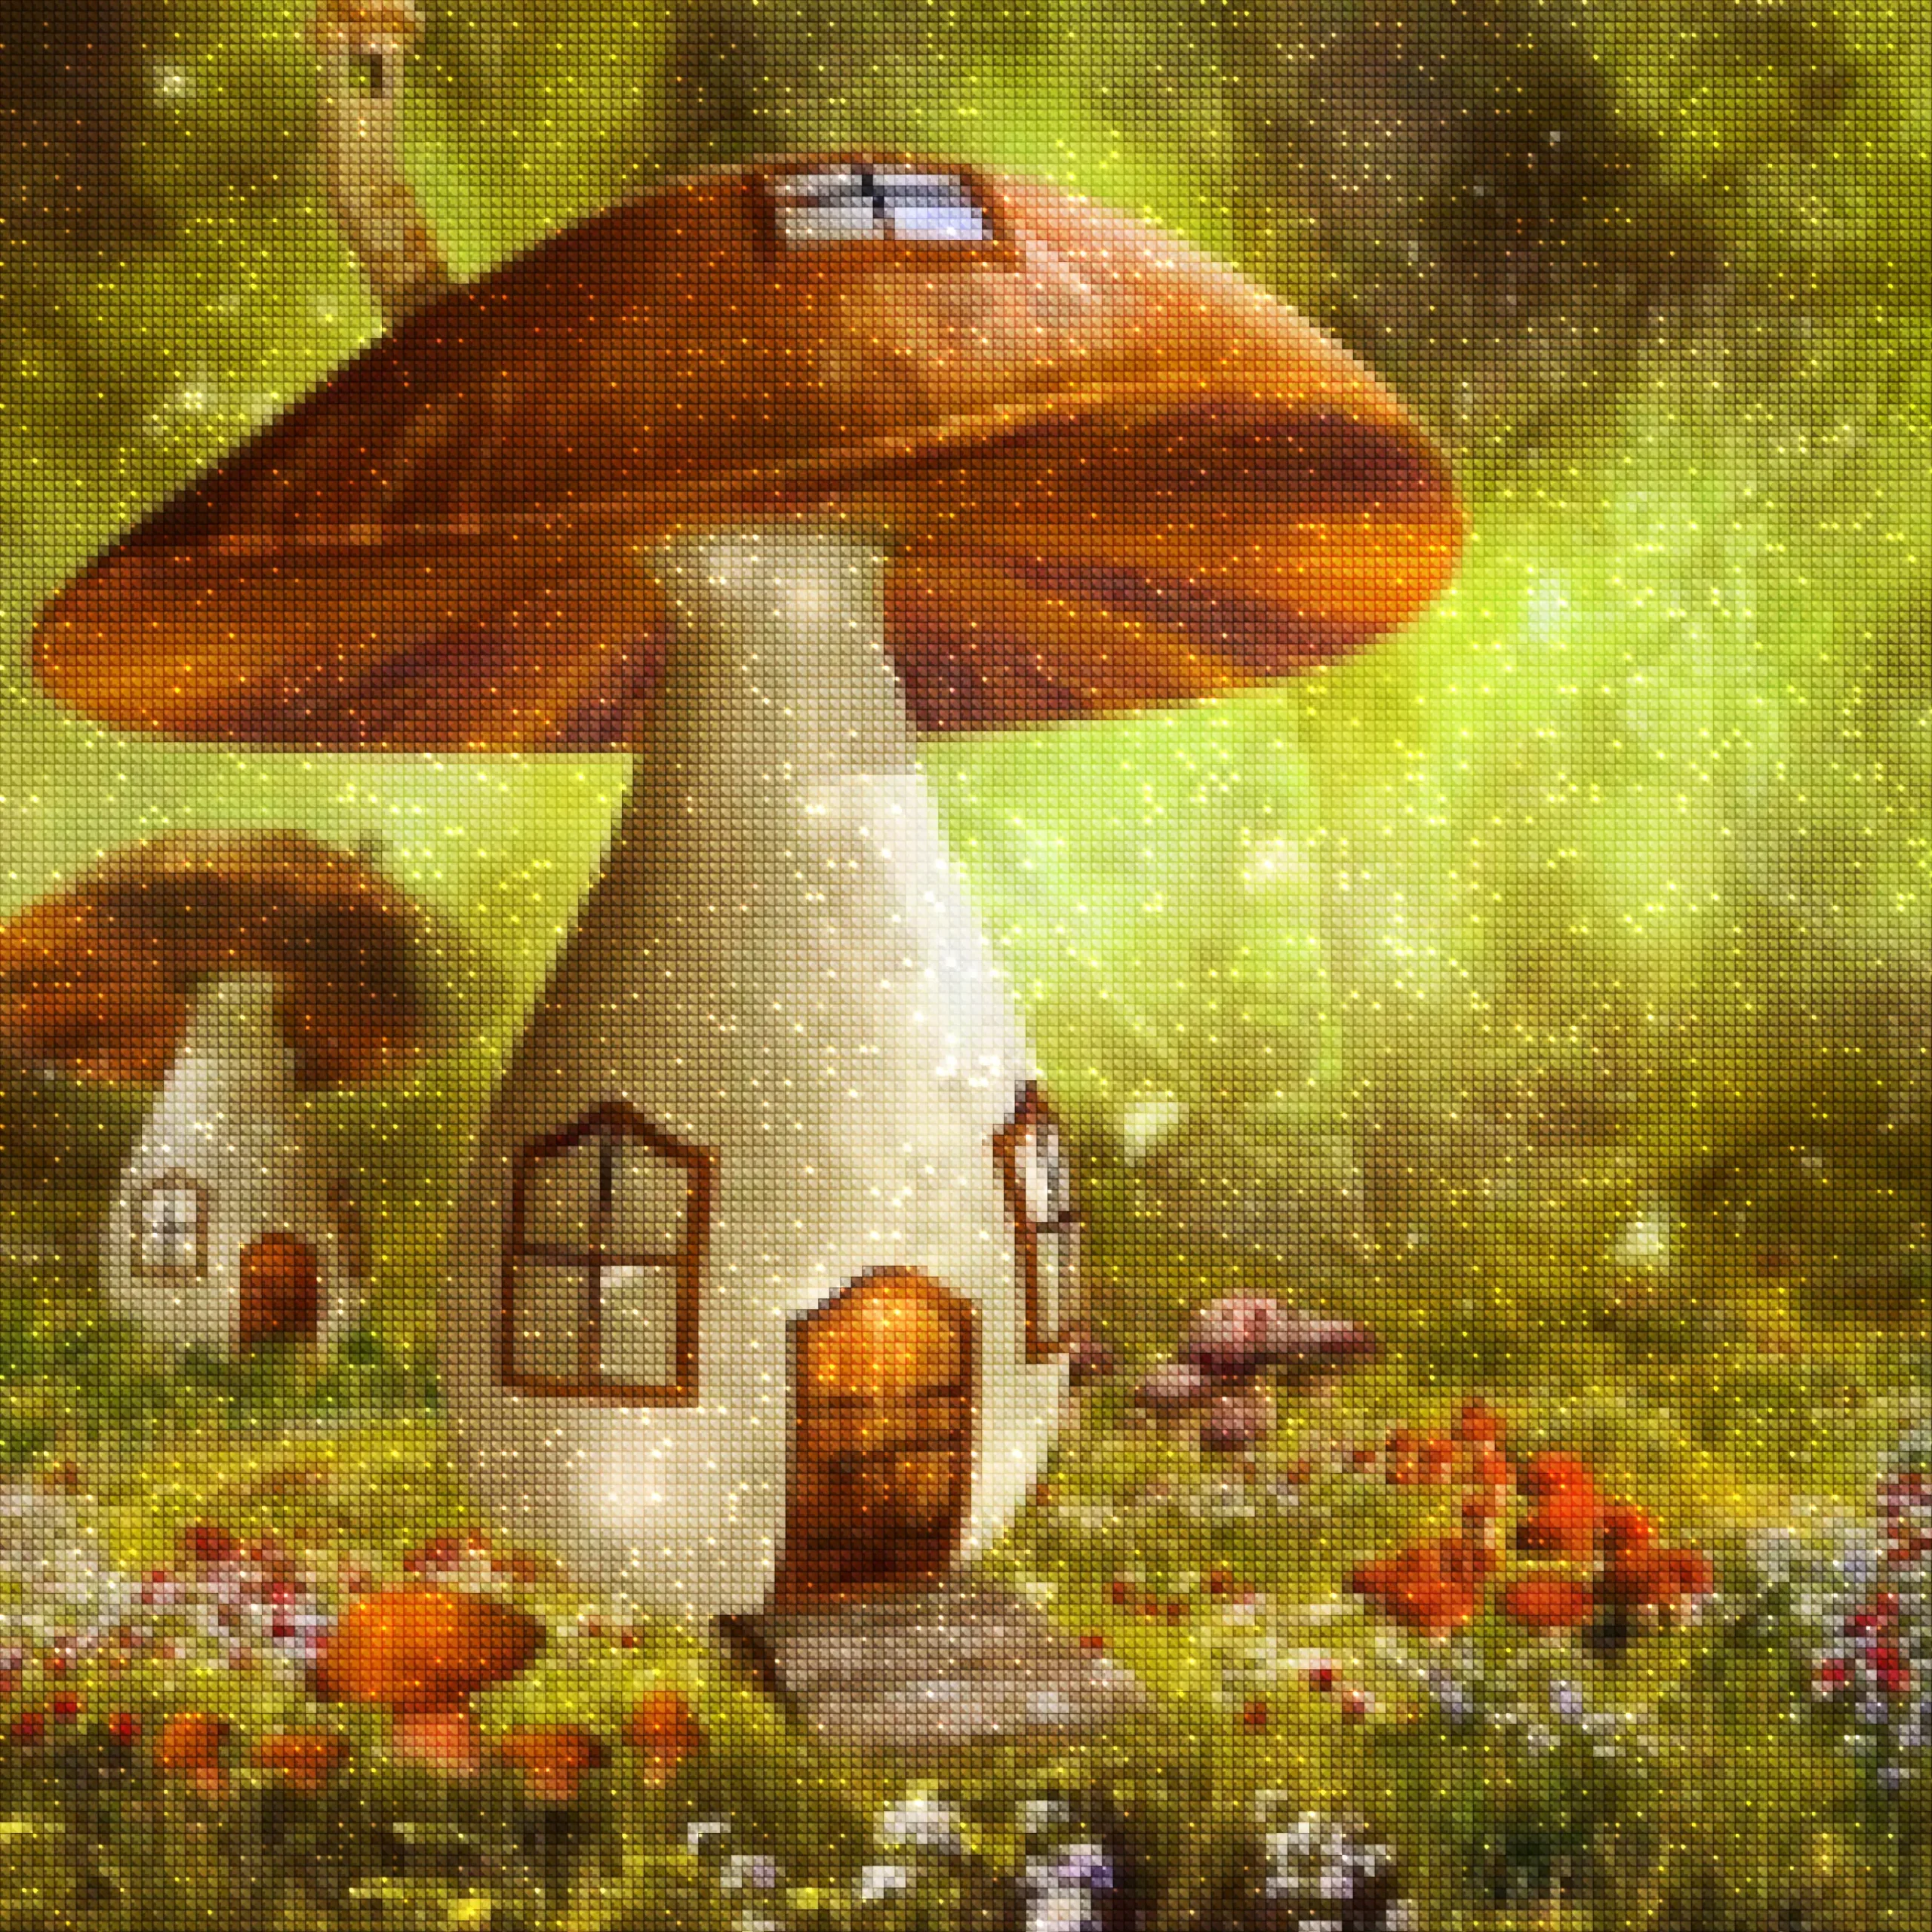 diamonds-wizard-diamond-painting-kits-Fantasy-Mushroom-The Mushroom House-diamonds.webp